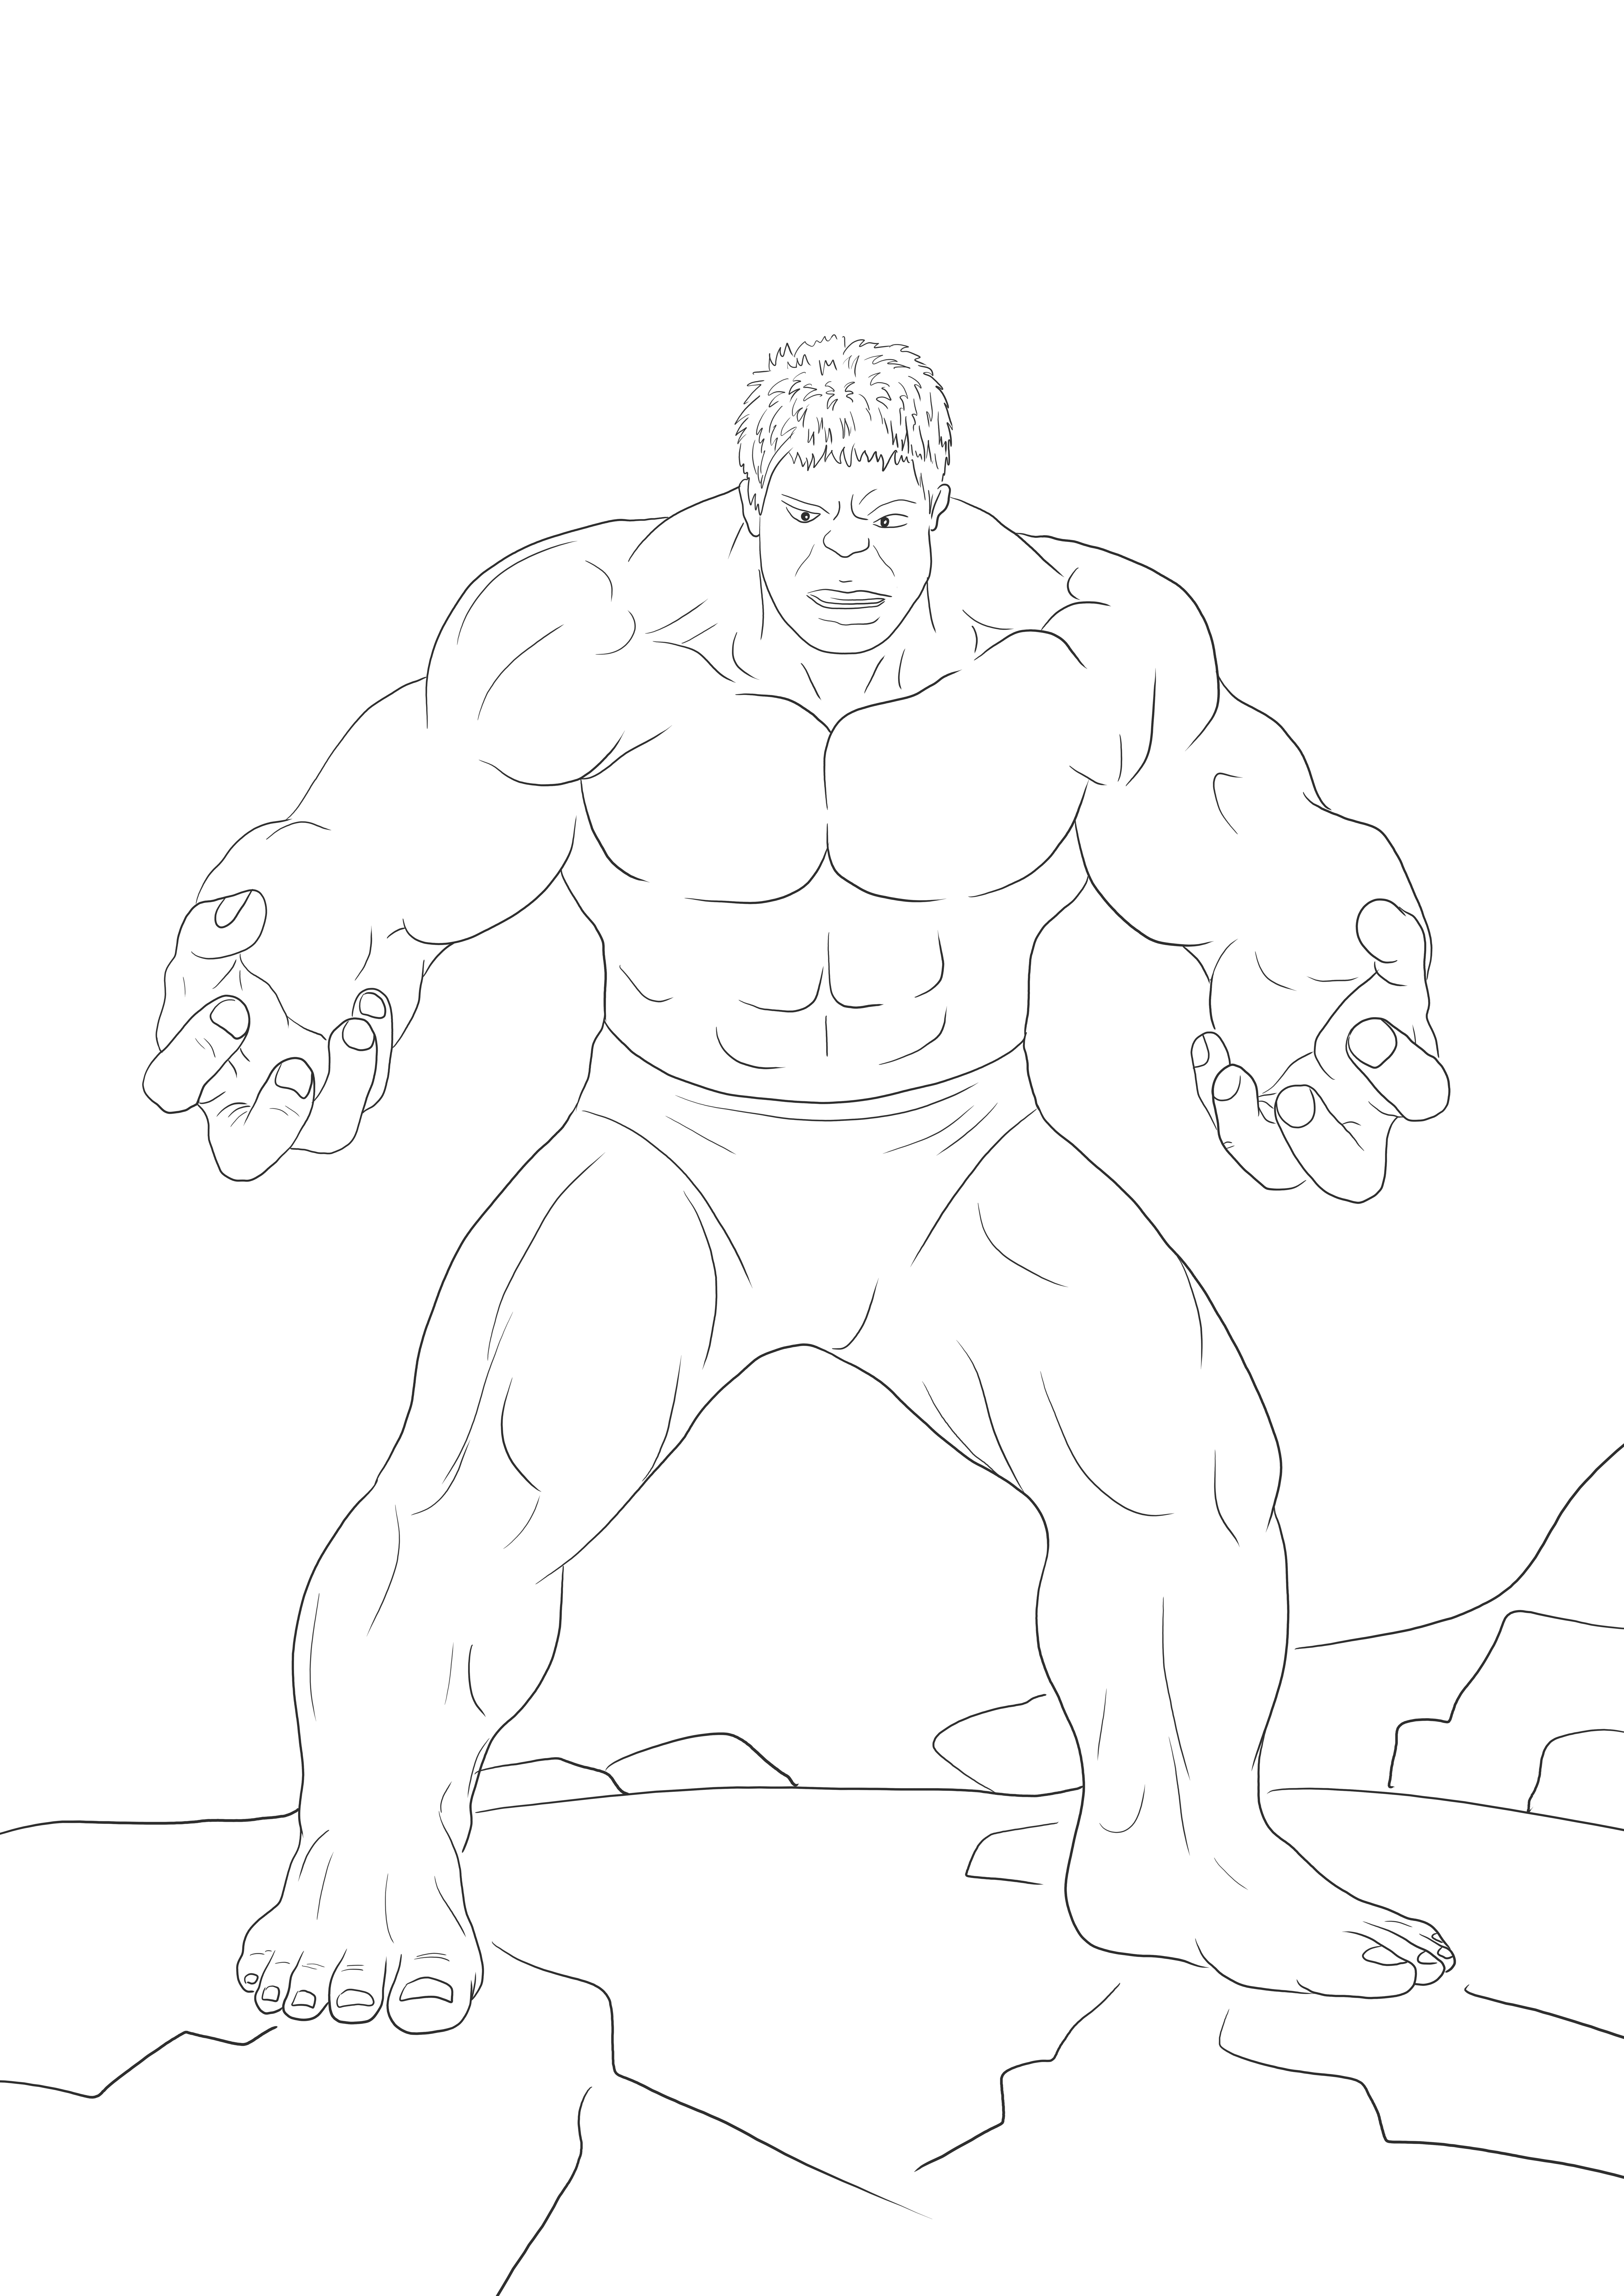 Imprimível grátis de Hulk bravo para colorir para ensinar sobre os heróis da Marvel